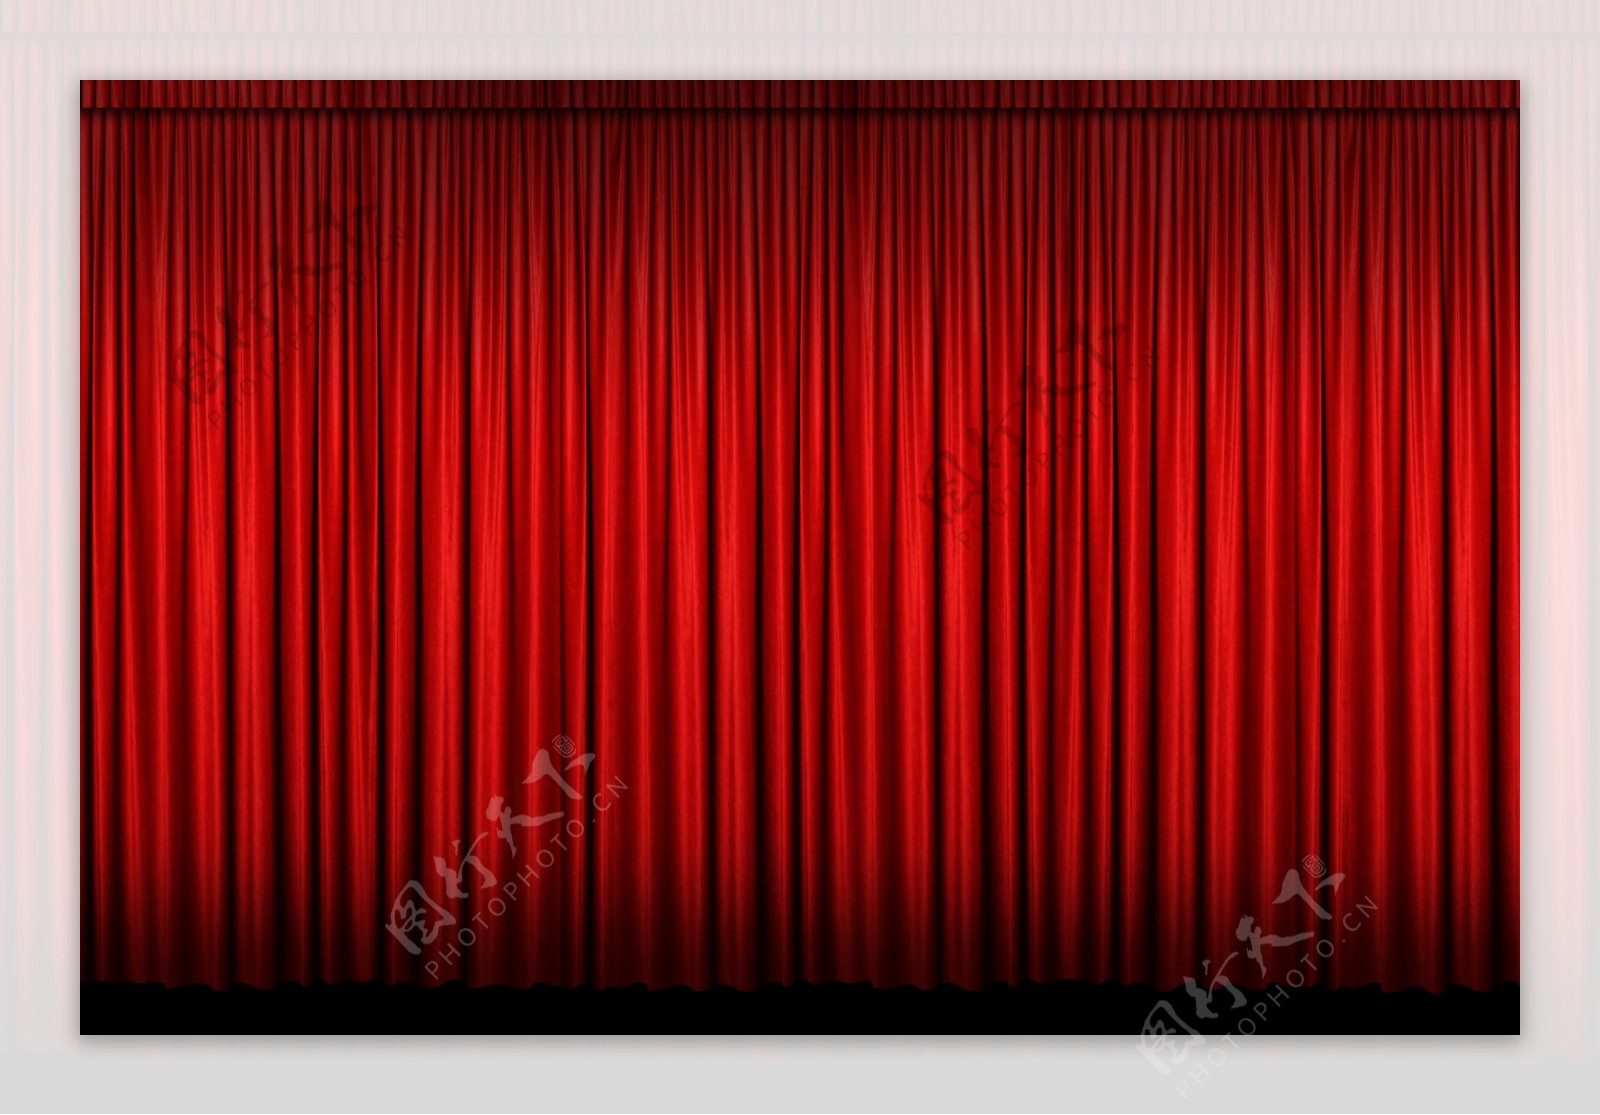 红色幕布舞台展台立体背景素材